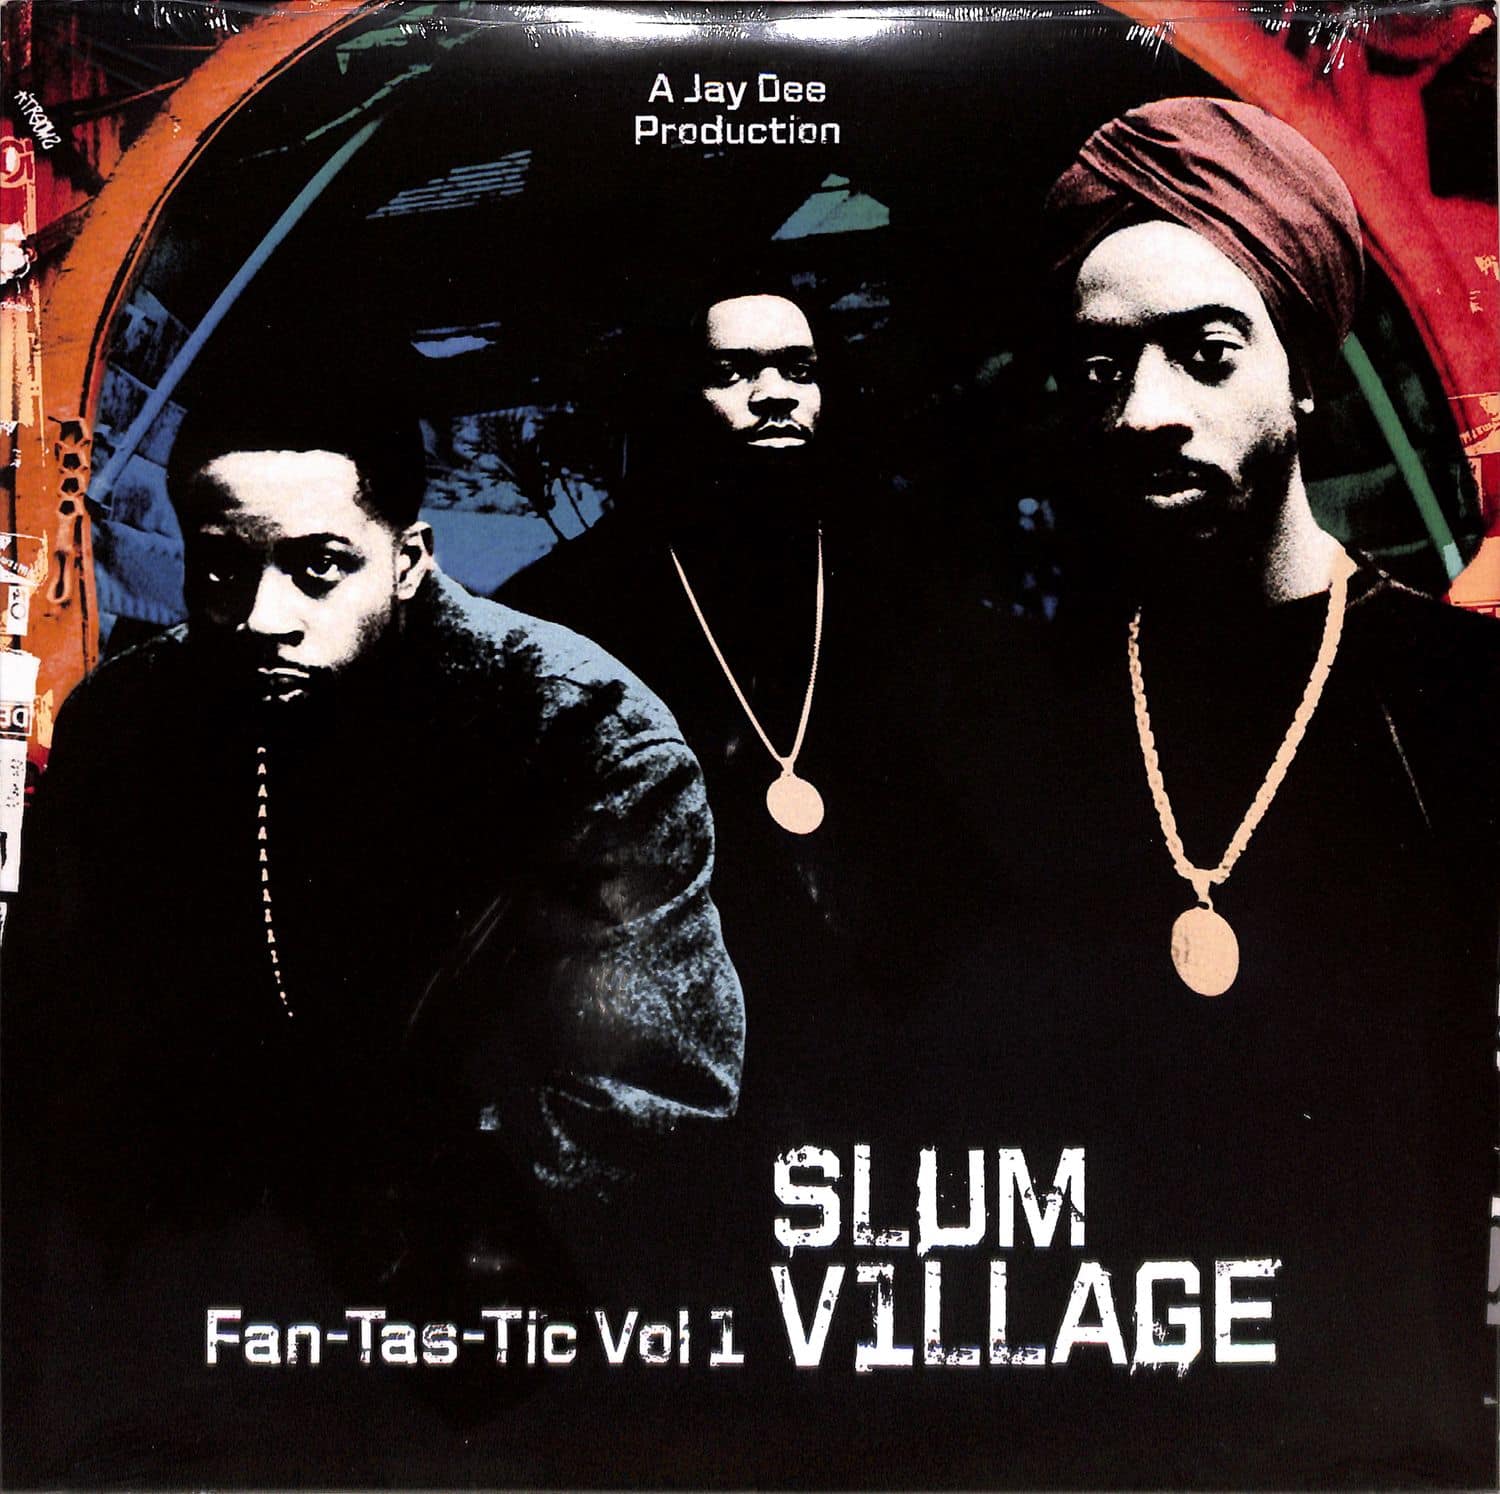 Slum Village - FAN-TAS-TIC VOL.1 